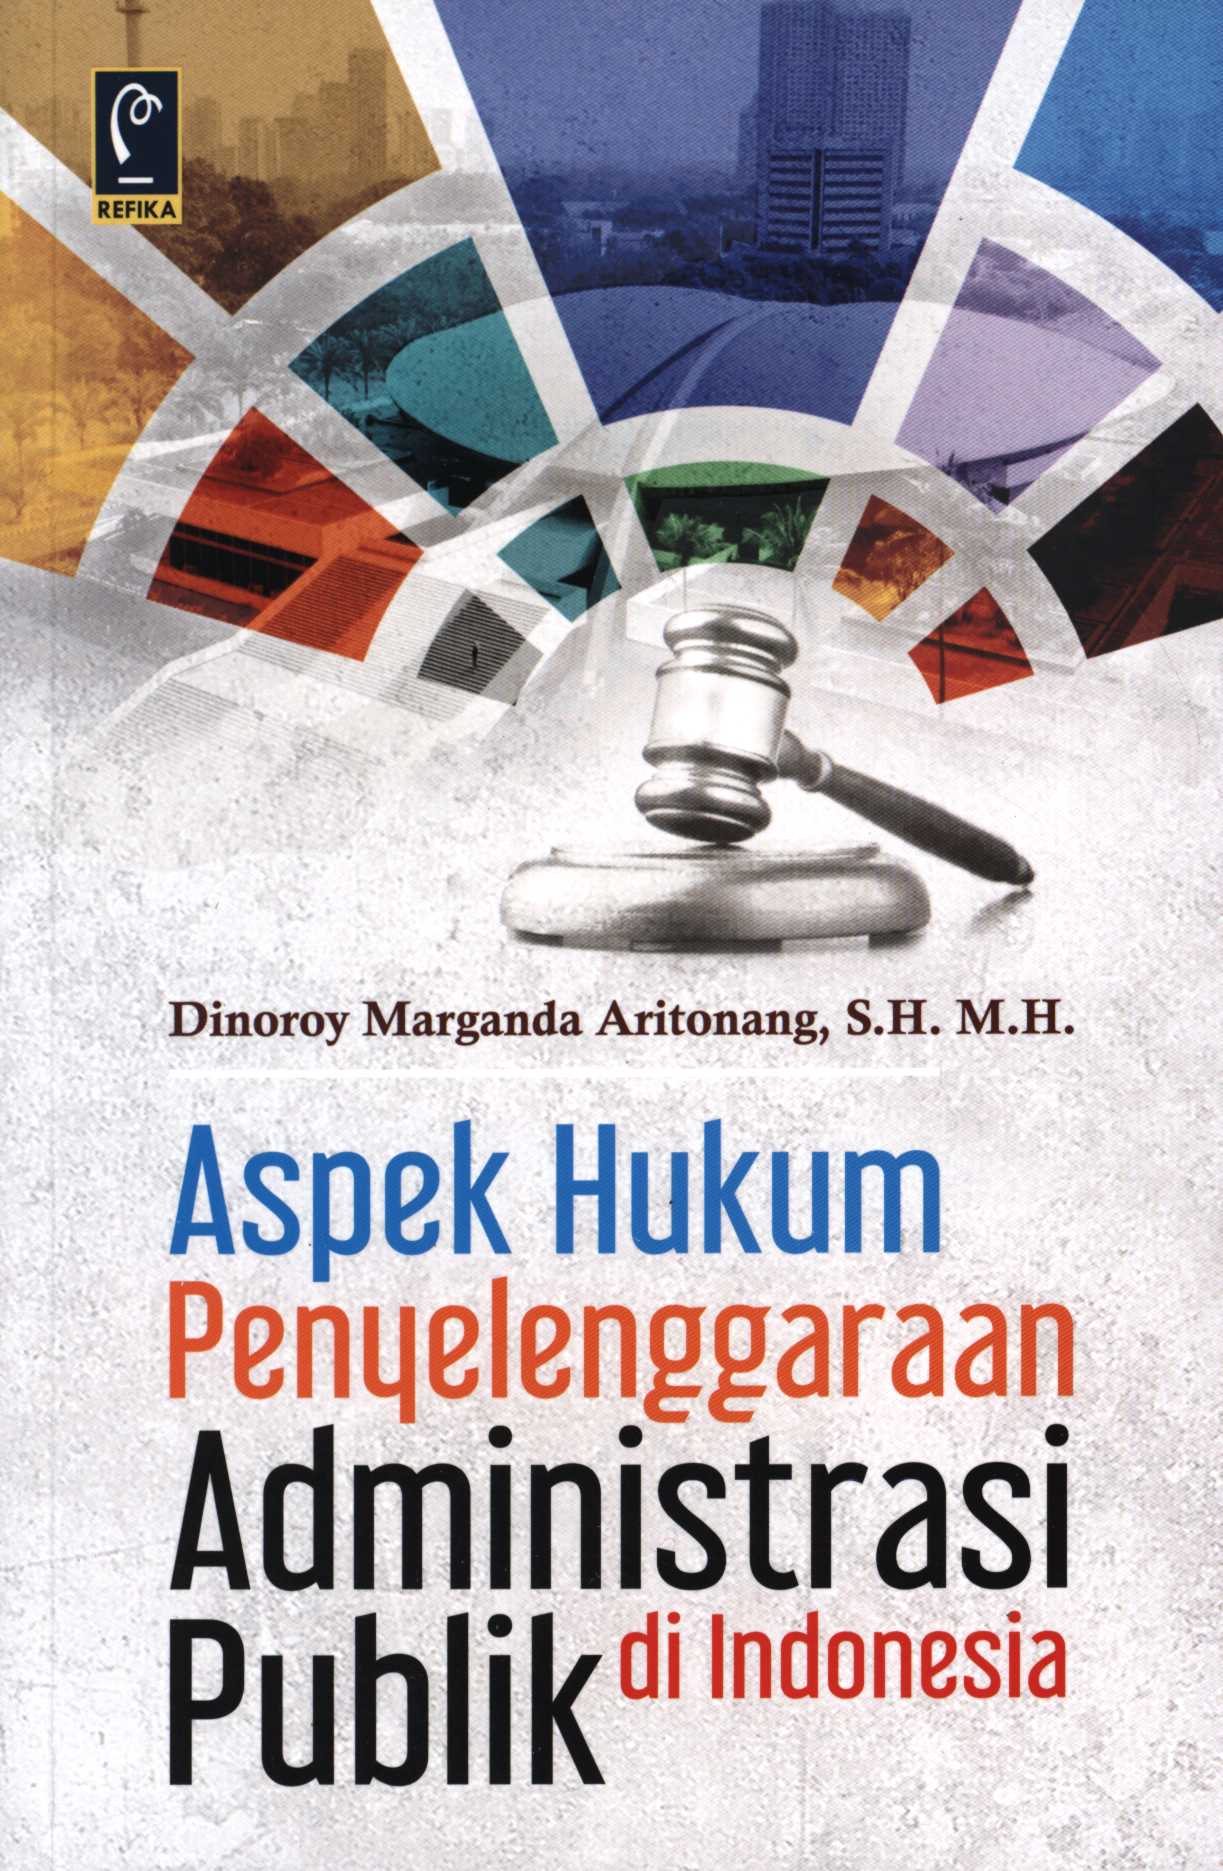 Aspek hukum penyelenggaraan administrasi publik di Indonesia